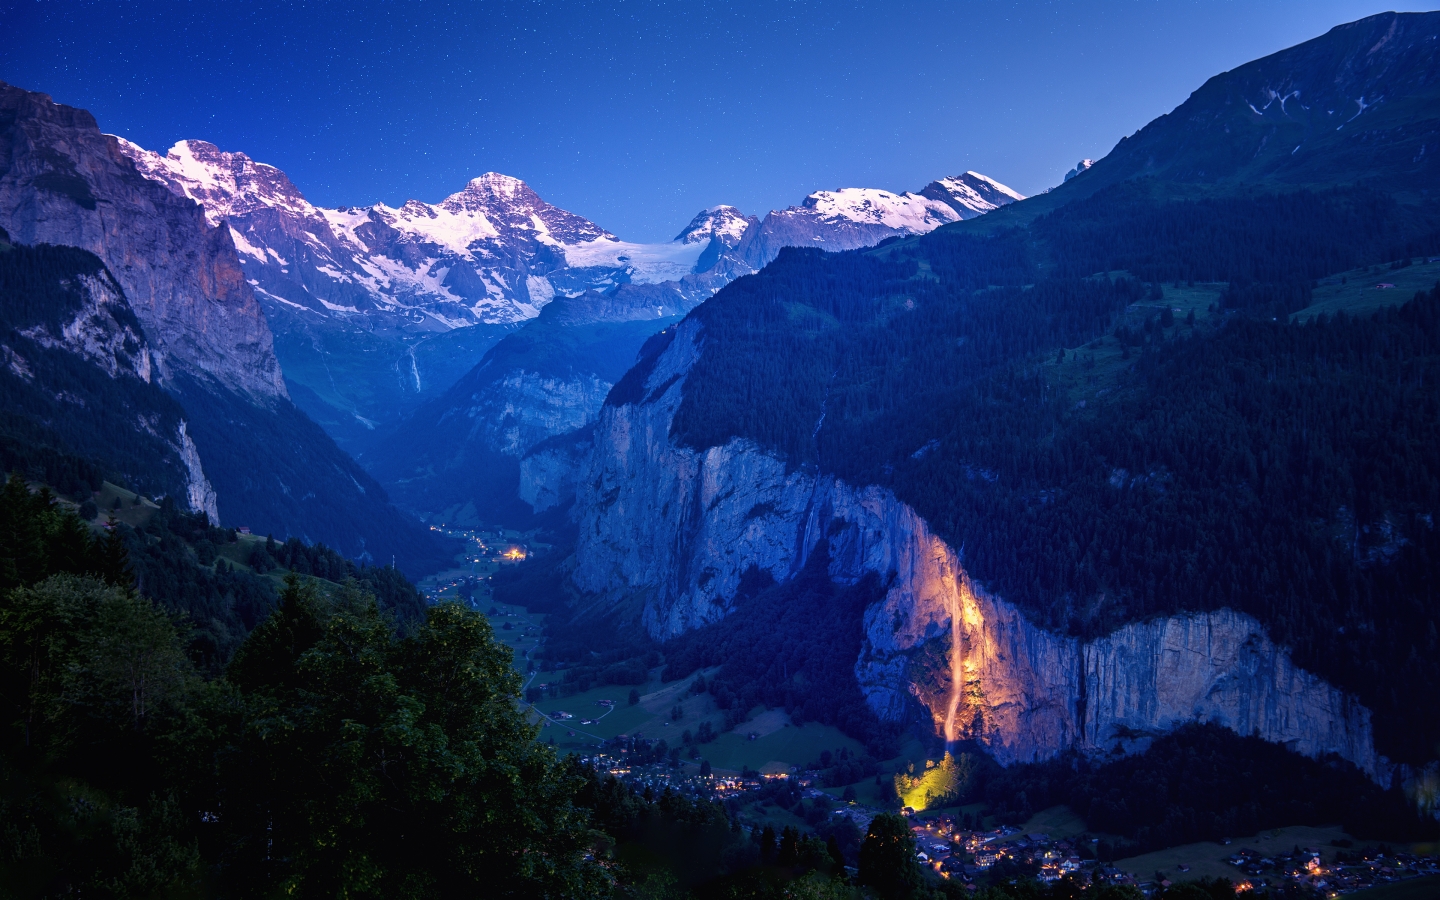 Lauterbrunnen Valley for 1440 x 900 widescreen resolution